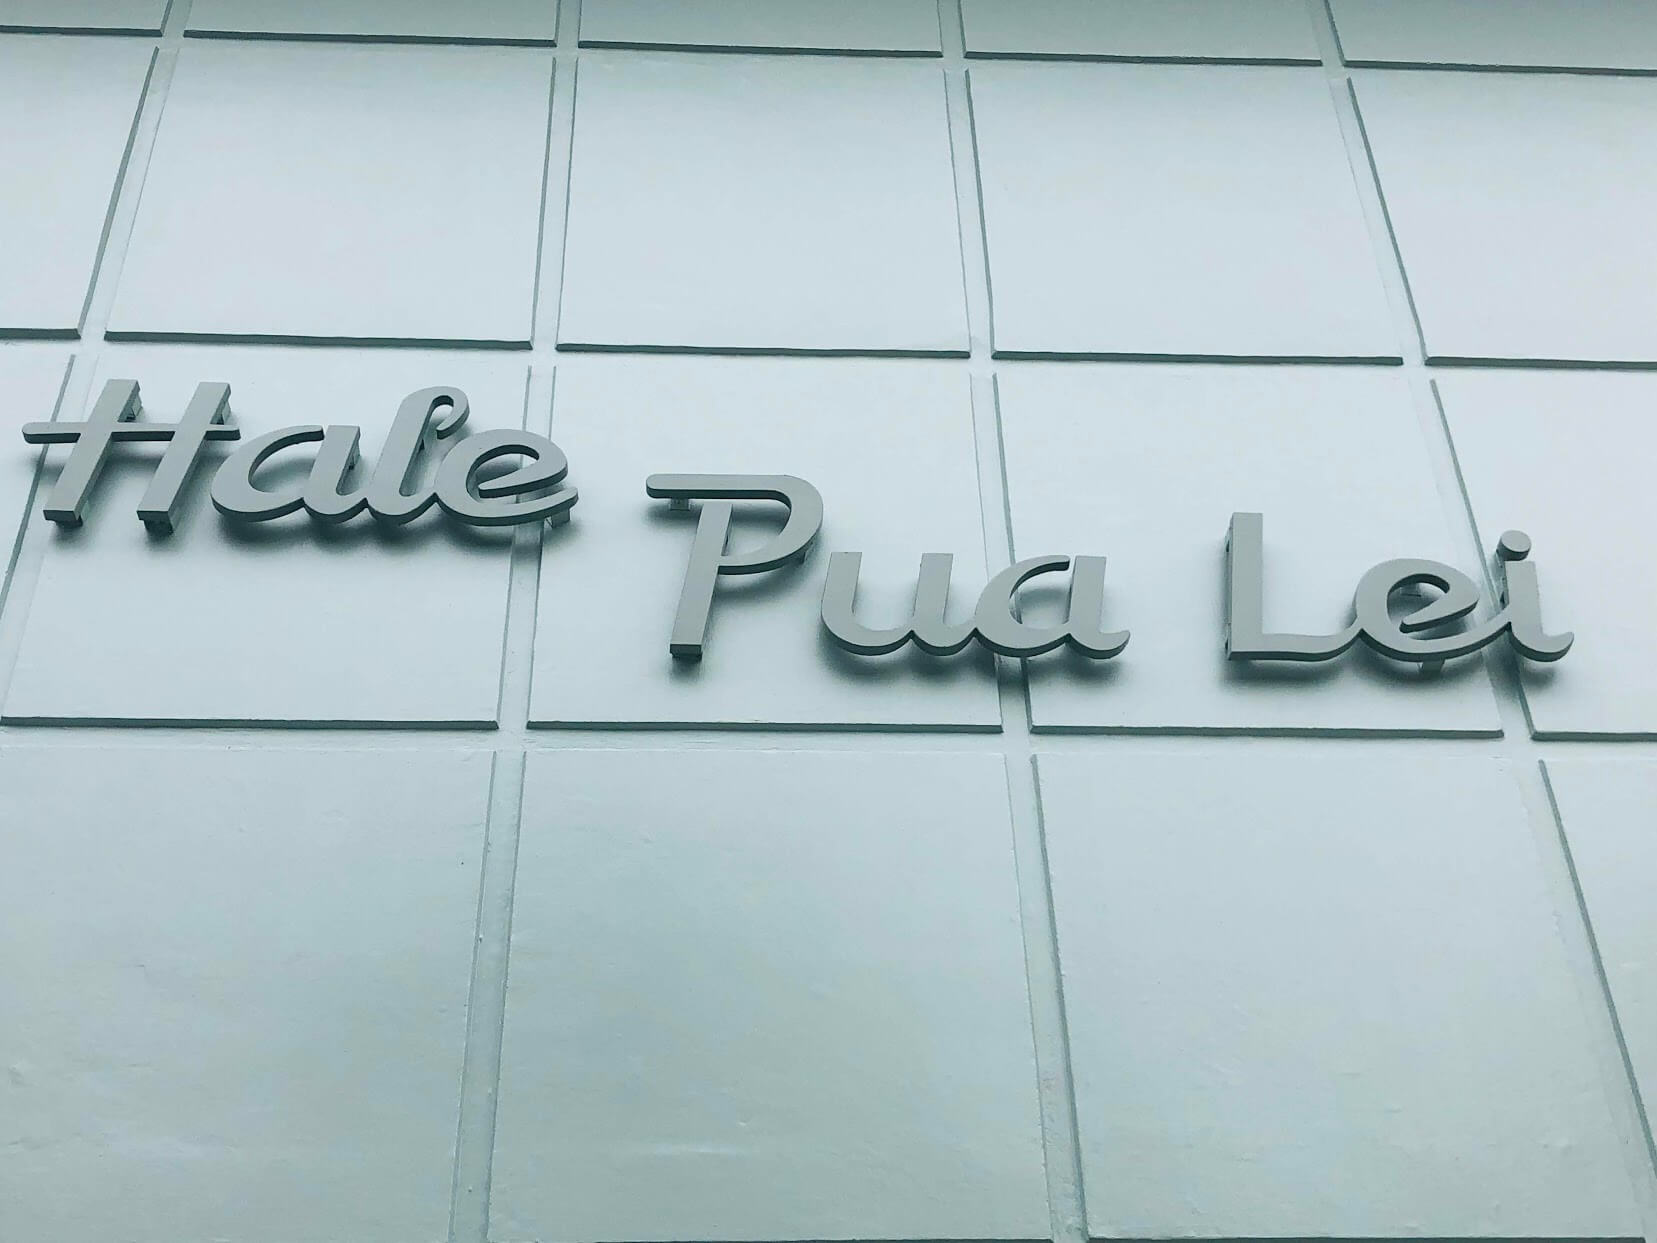 Hale Pua Leiの看板